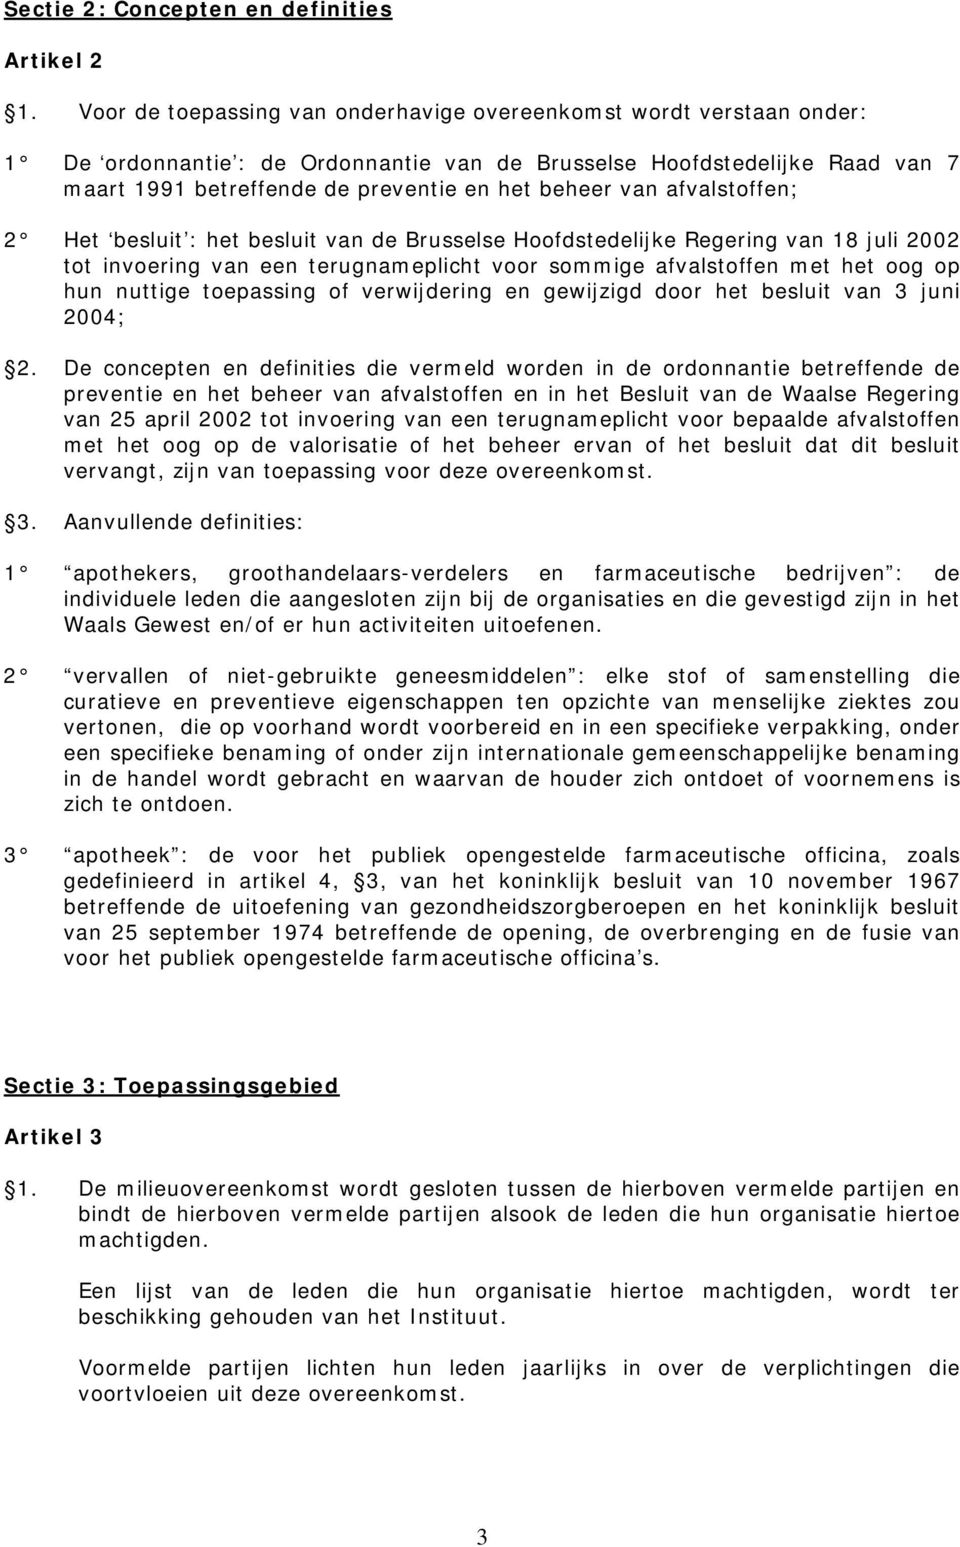 van afvalstoffen; 2 Het besluit : het besluit van de Brusselse Hoofdstedelijke Regering van 18 juli 2002 tot invoering van een terugnameplicht voor sommige afvalstoffen met het oog op hun nuttige